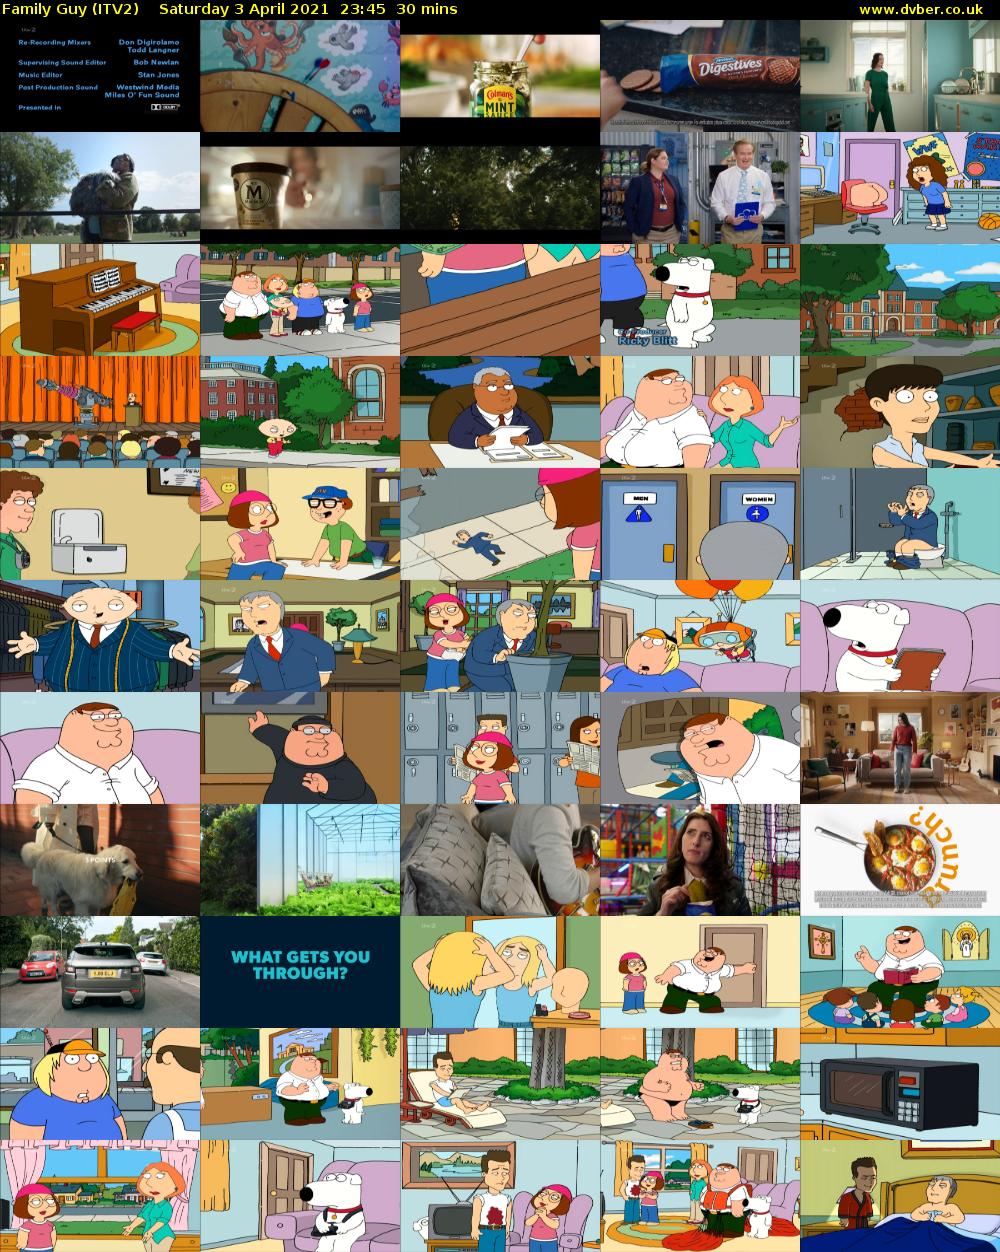 Family Guy (ITV2) Saturday 3 April 2021 23:45 - 00:15